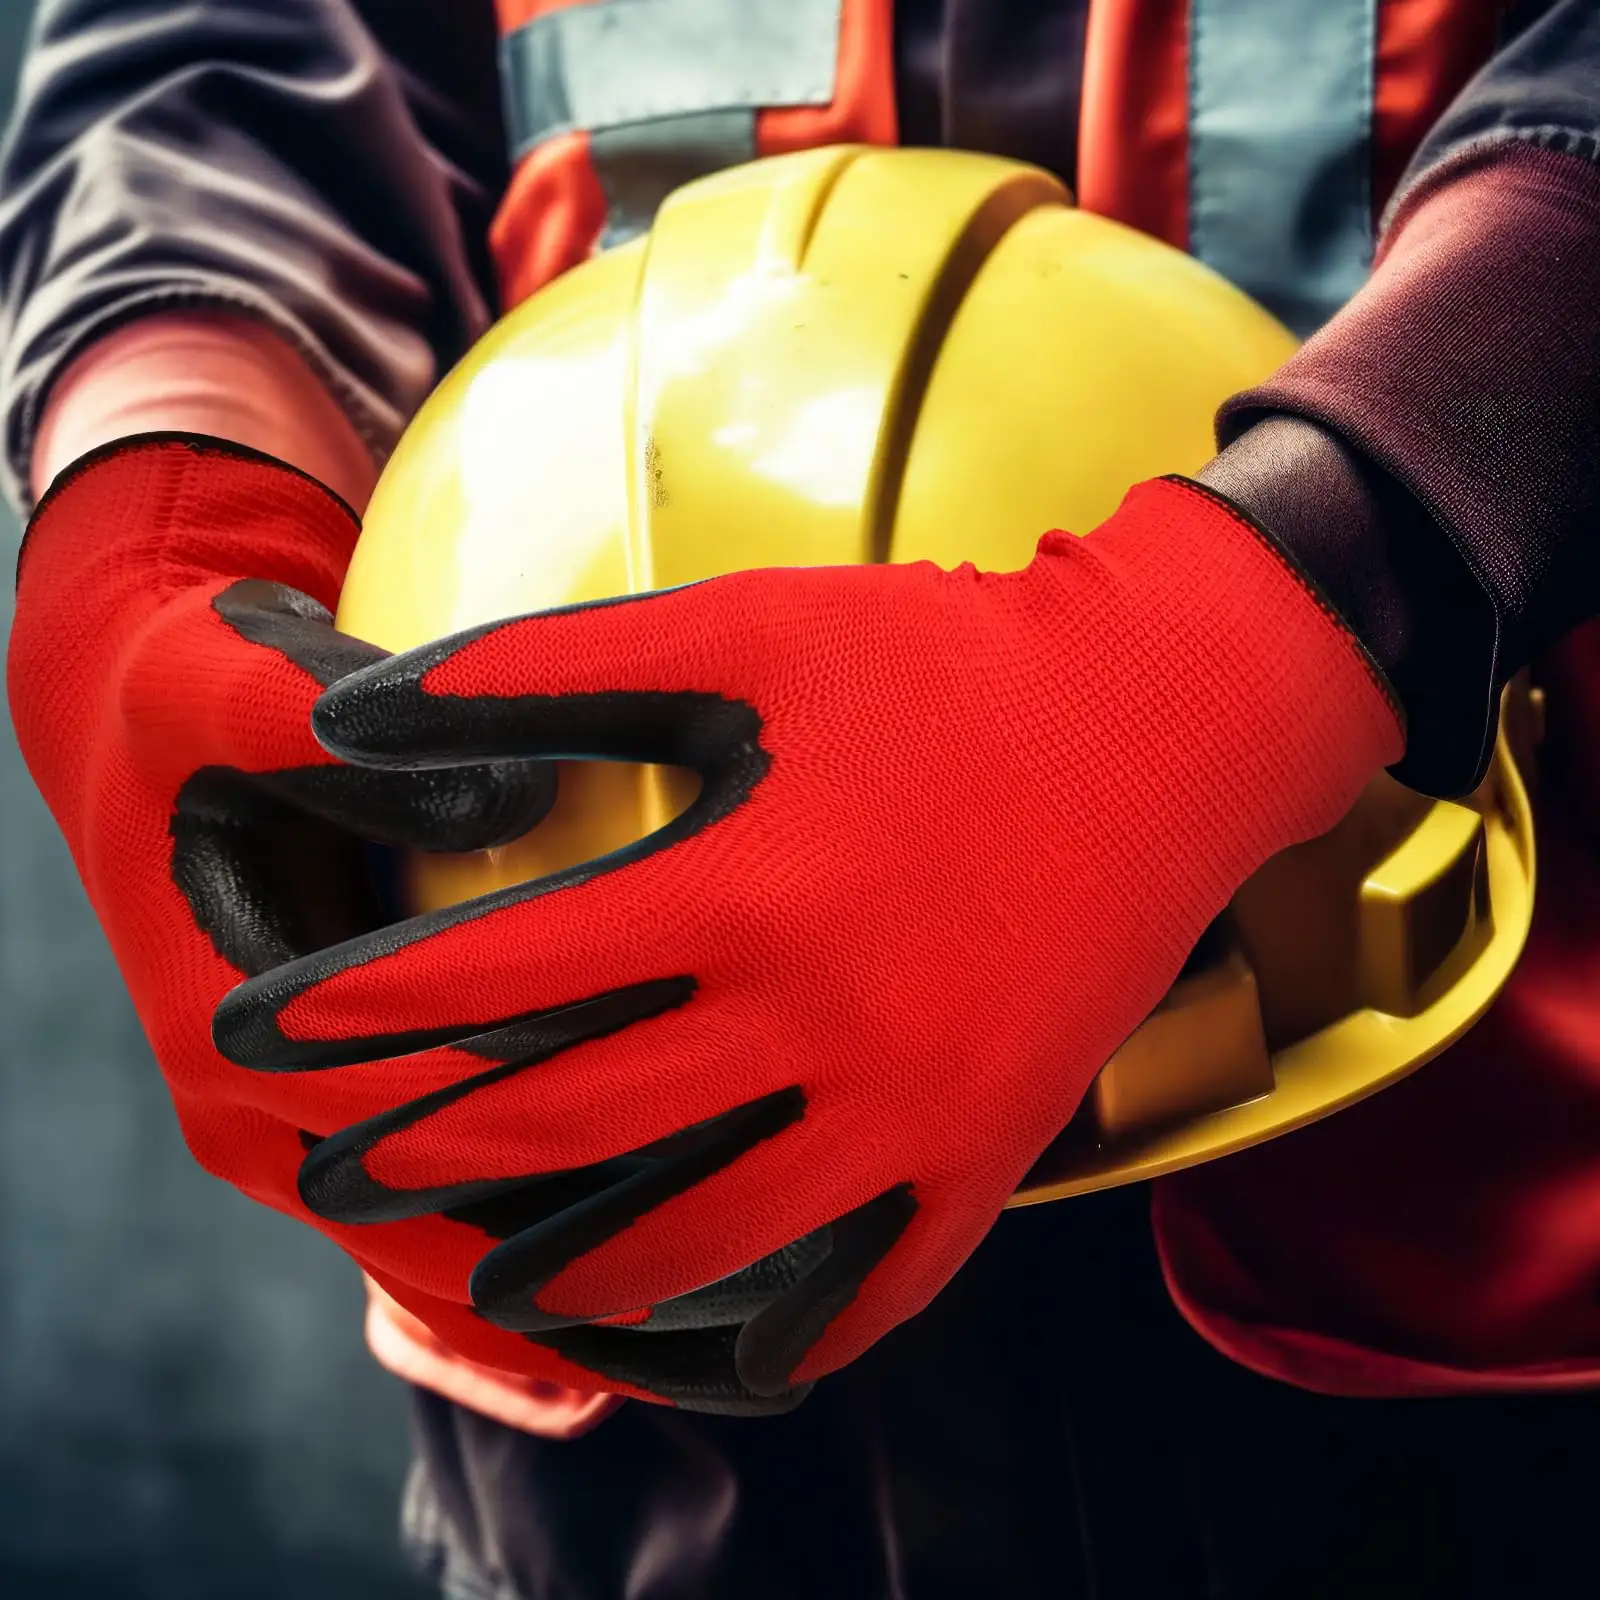 Atacado Preço Barato 13 Medidor Indústria De Construção Proteção De Mão Vermelho Preto Trabalho Nitrilo Revestido Luvas